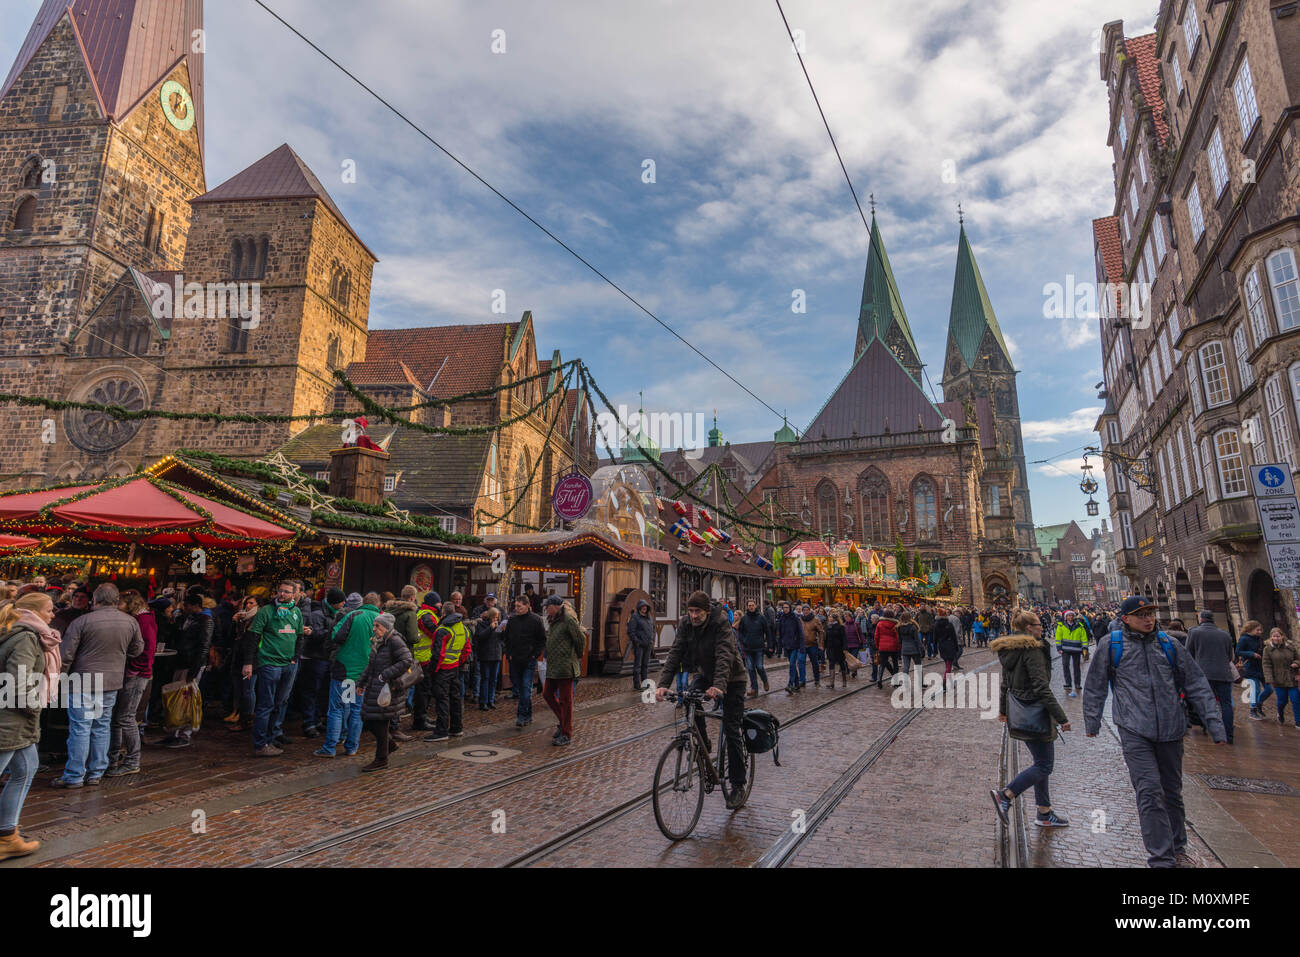 Weihnachtsmarkt, Marktplatz im Zentrum der Stadt, St. Petri Dom (rechts), Bremen, Deutschland, Europa Stockfoto